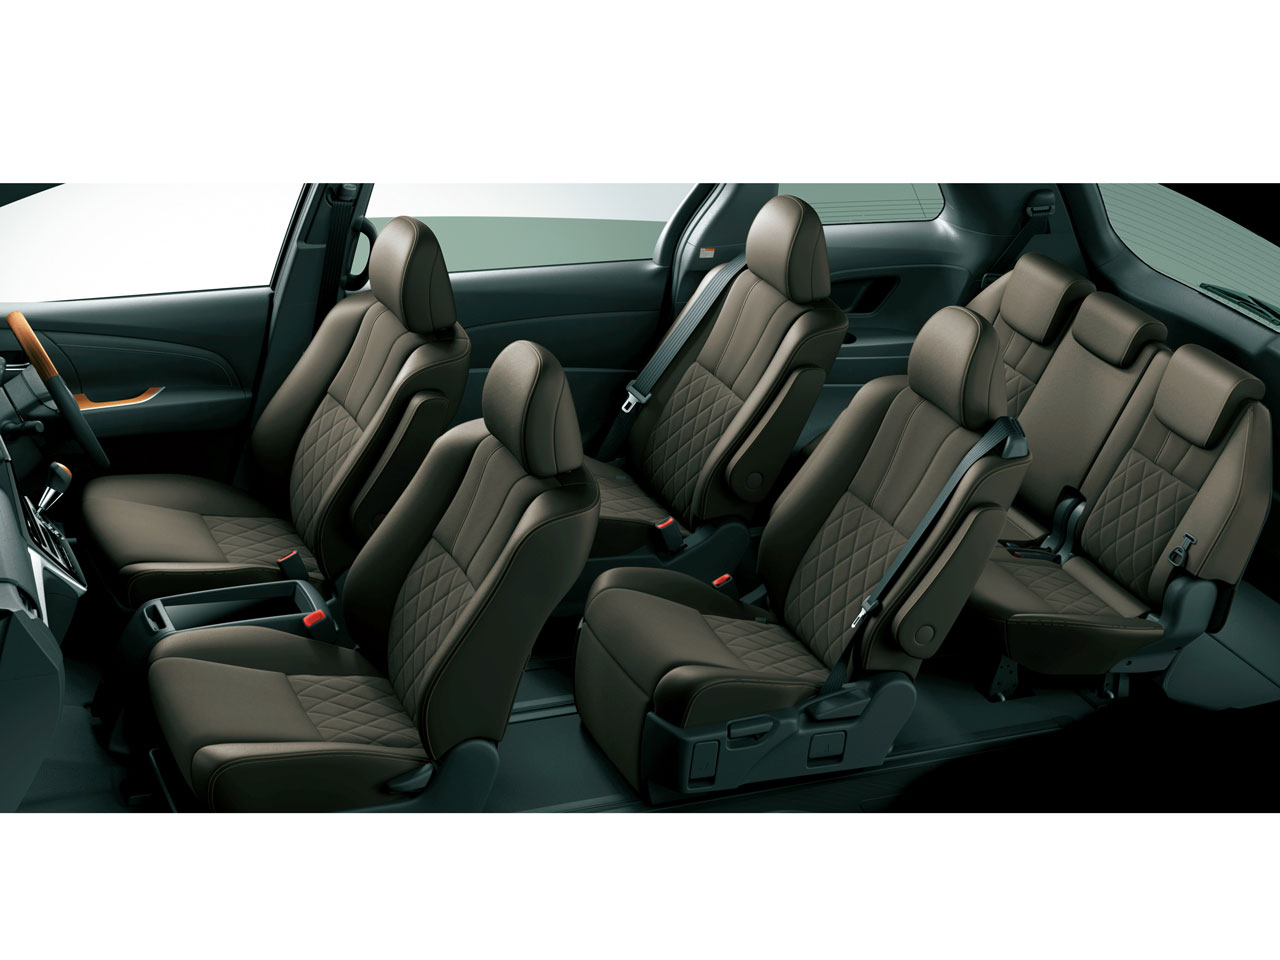 トヨタ エスティマ 06年モデル アエラス 8人乗り 価格 性能 装備 オプション 16年6月6日発売 価格 Com